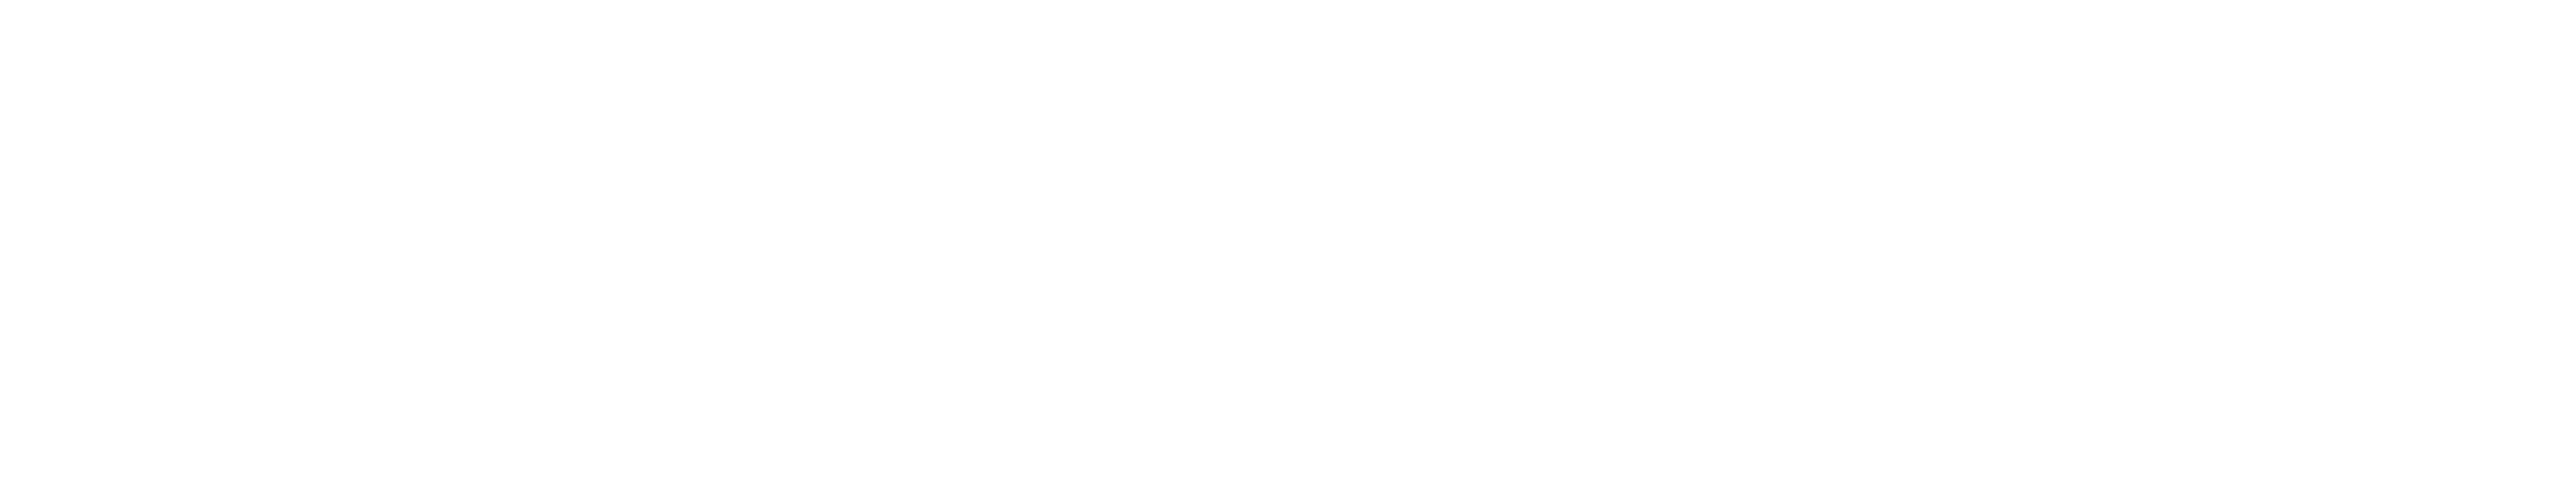 logo blinkb